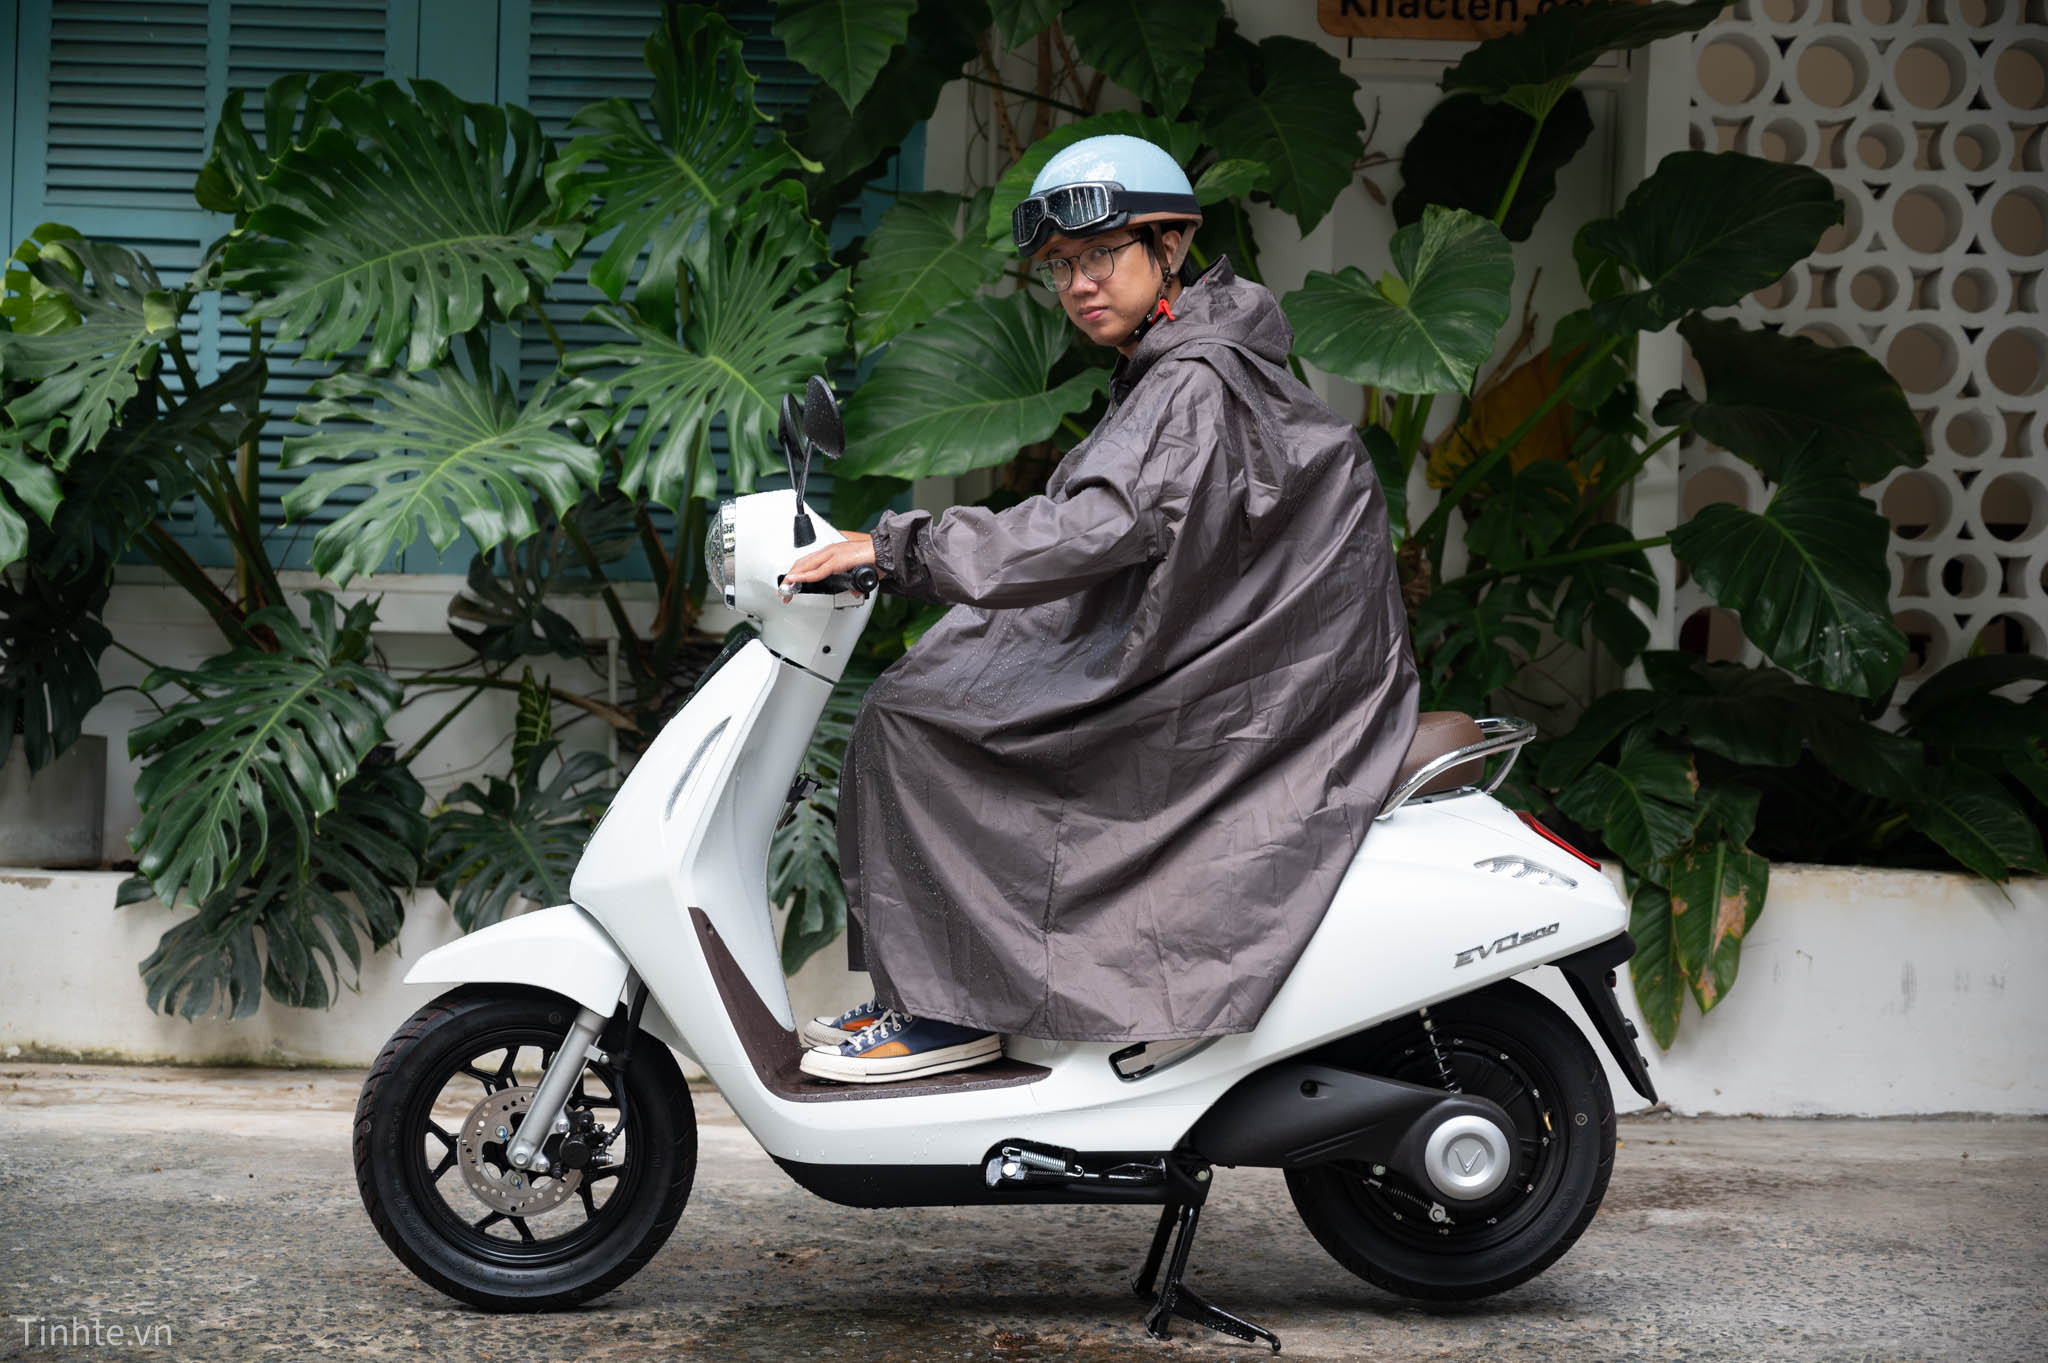 Đi xe máy mùa mưa: Mình vẫn thích mặc áo mưa 1 người hơn là áo mưa cánh dơi